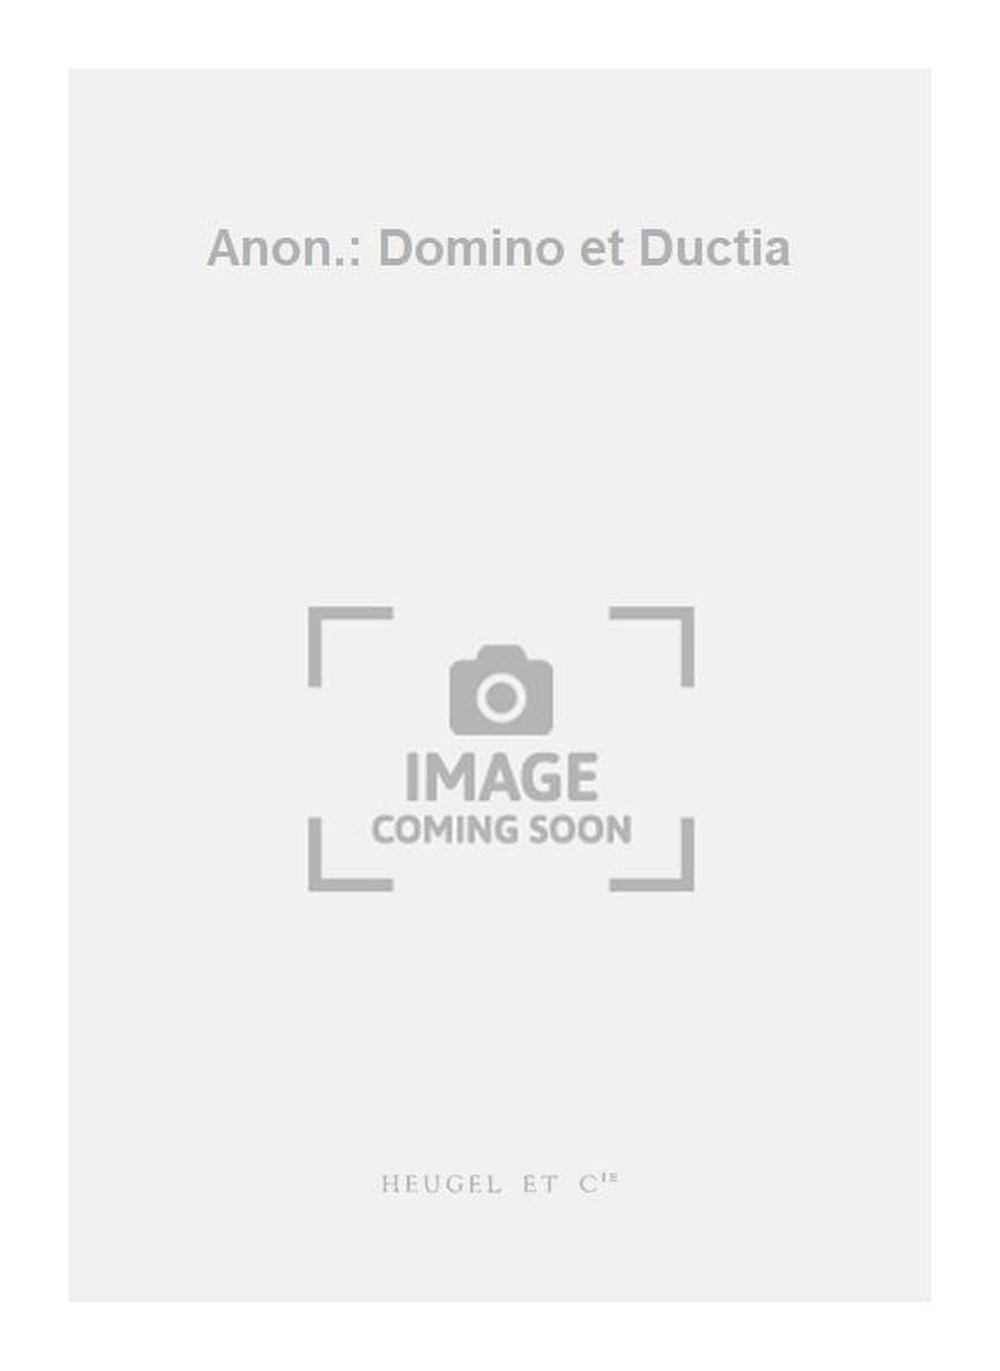 Anon.: Domino et Ductia